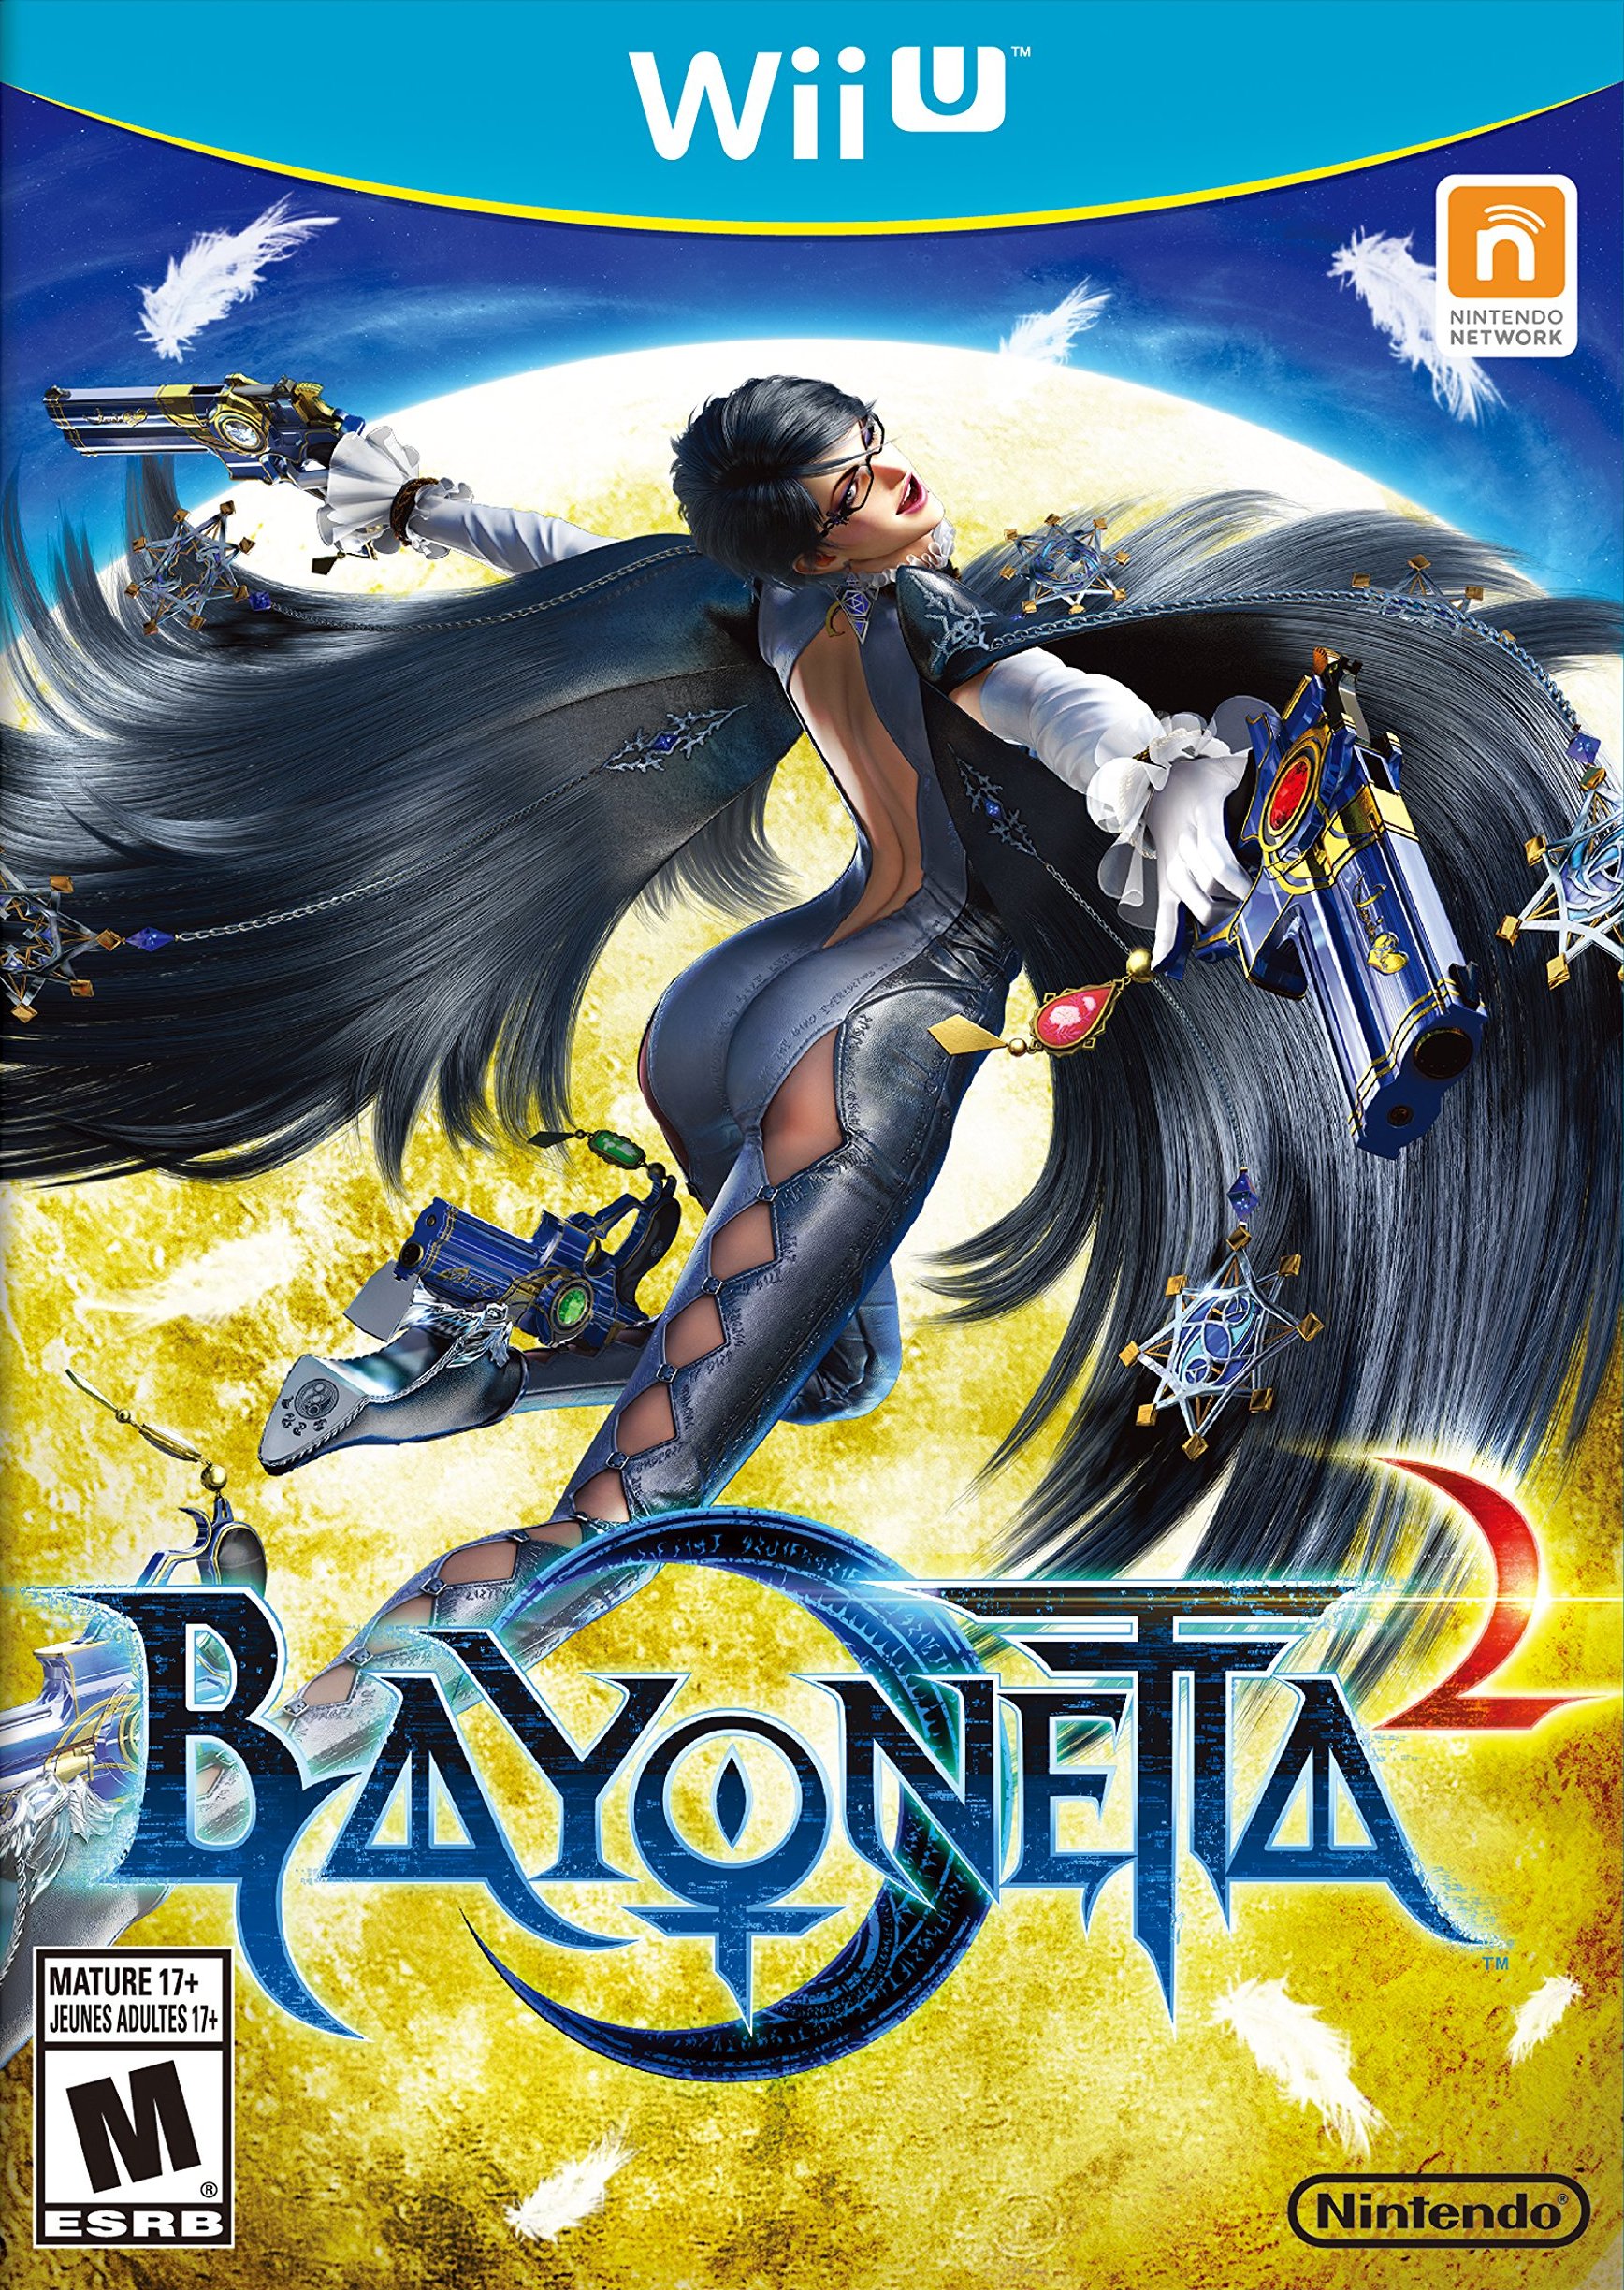 Costumes/Bayonetta 2, Bayonetta Wiki